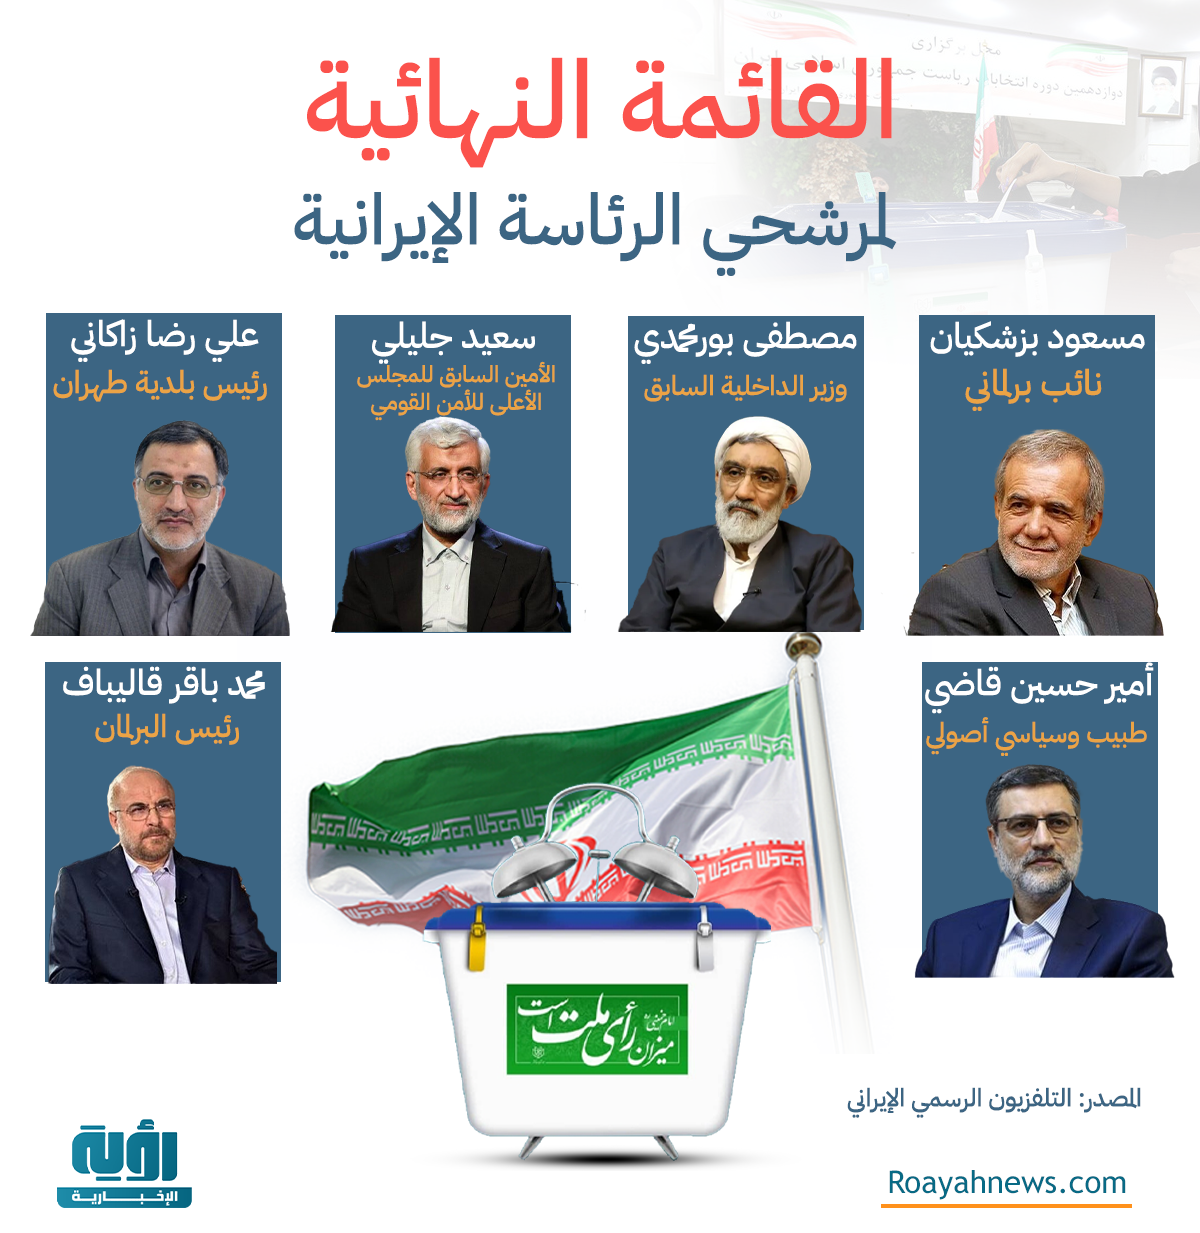 القائمة النهائية لمرشحي الرئاسة الإيرانية